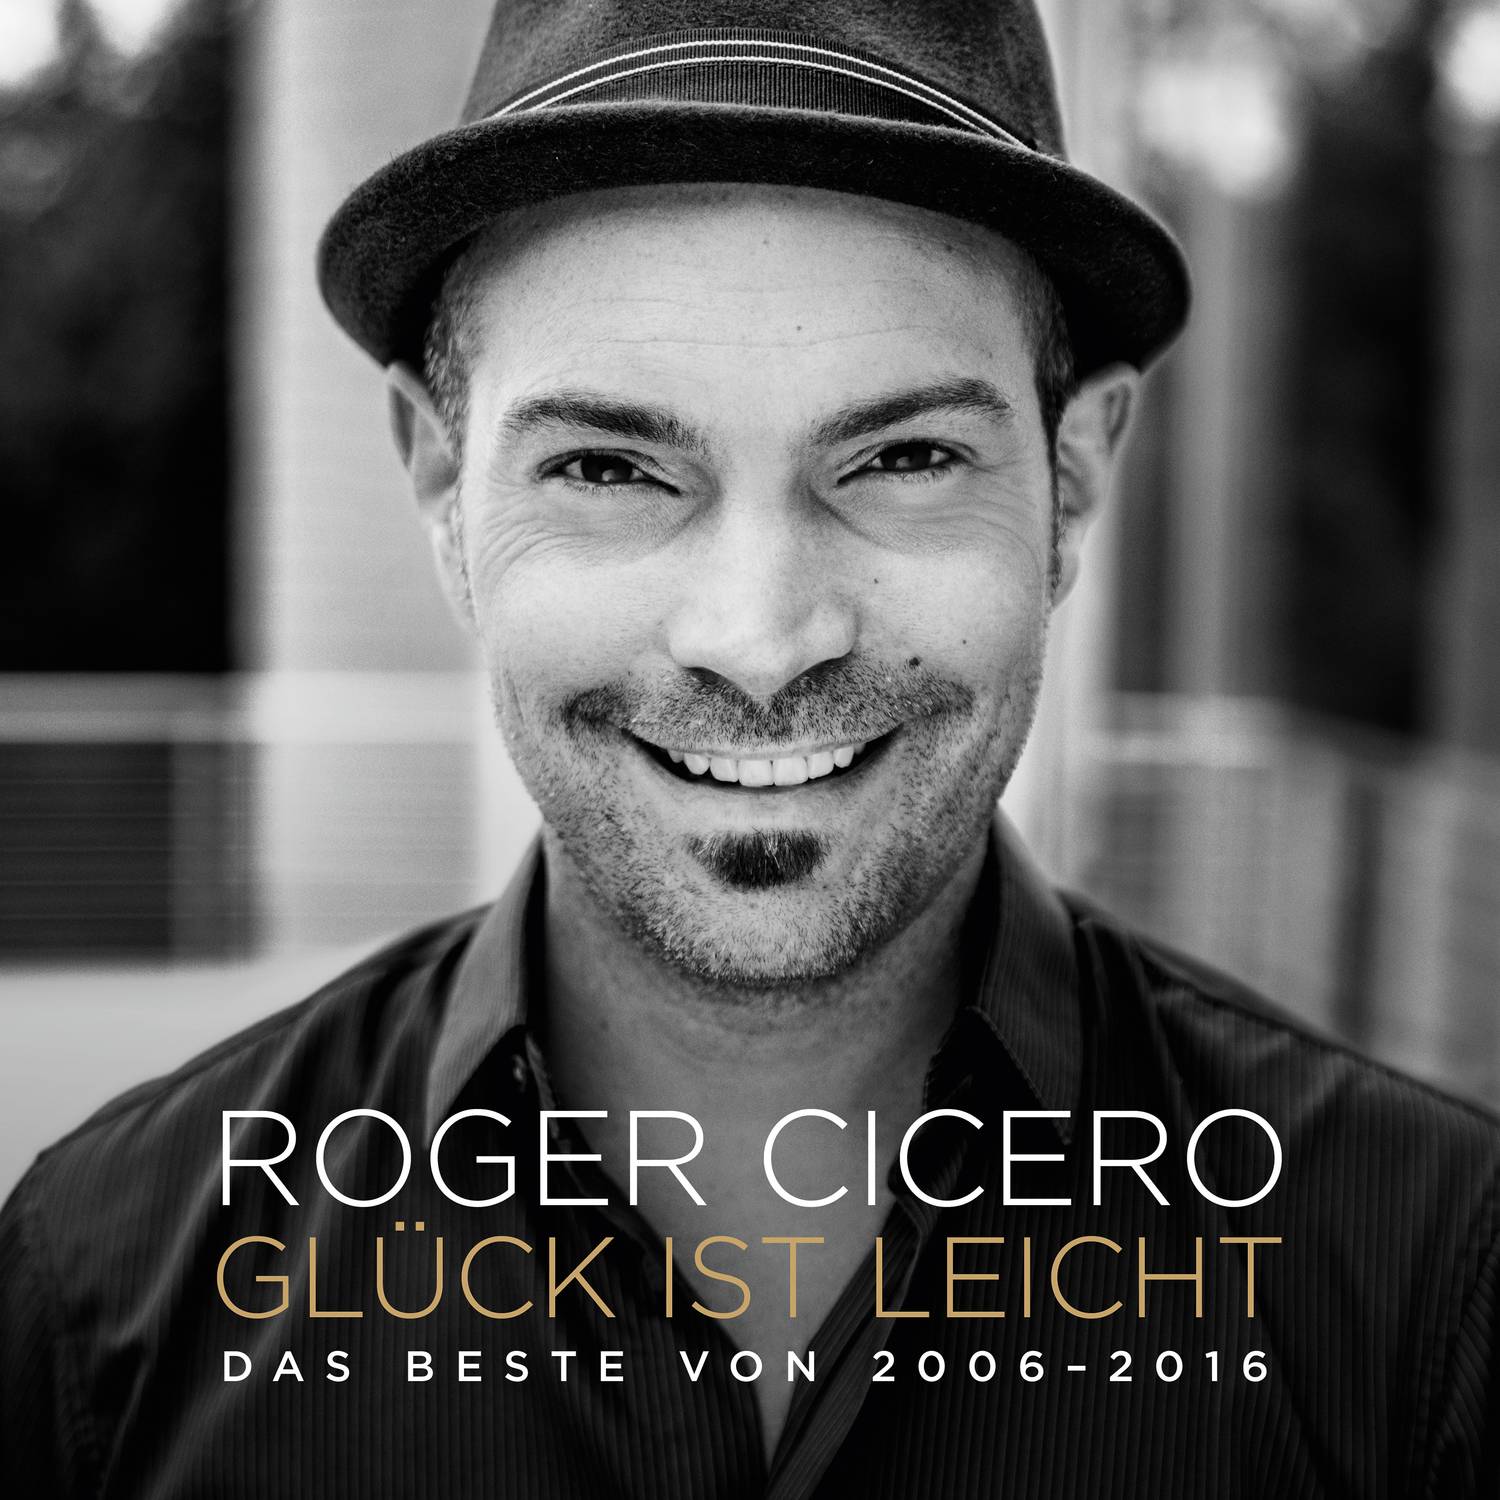 Roger Cicero – Gluck ist leicht: Das Beste von 2006-2016 (2017) [AcousticSounds FLAC 24bit/44,1kHz]